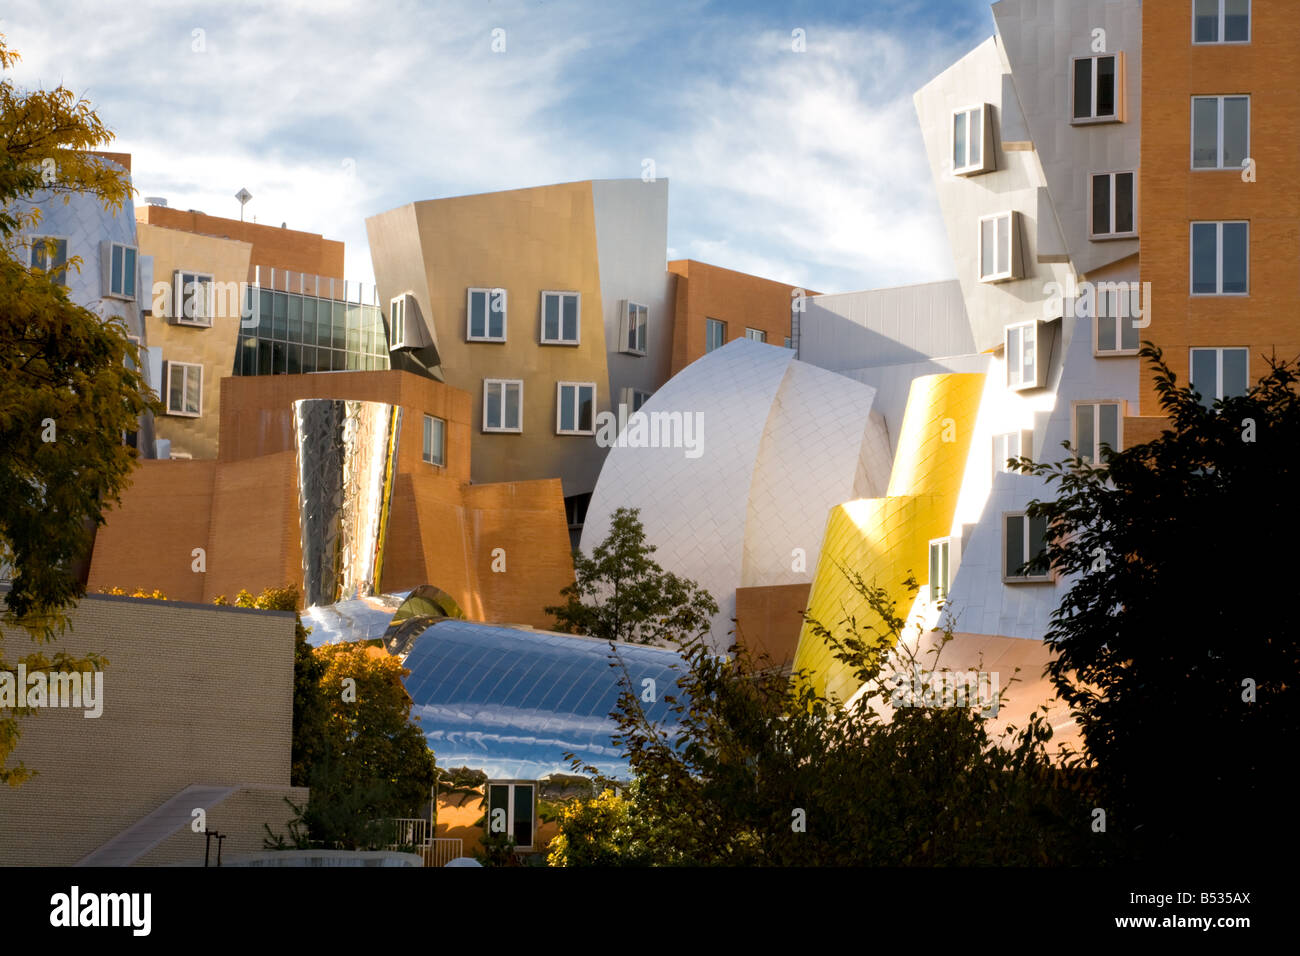 Stata Center de Frank Gehry en el Instituto de Tecnología de Massachusetts (MIT), aka, Cambridge, Massachusetts, EE.UU. Foto de stock